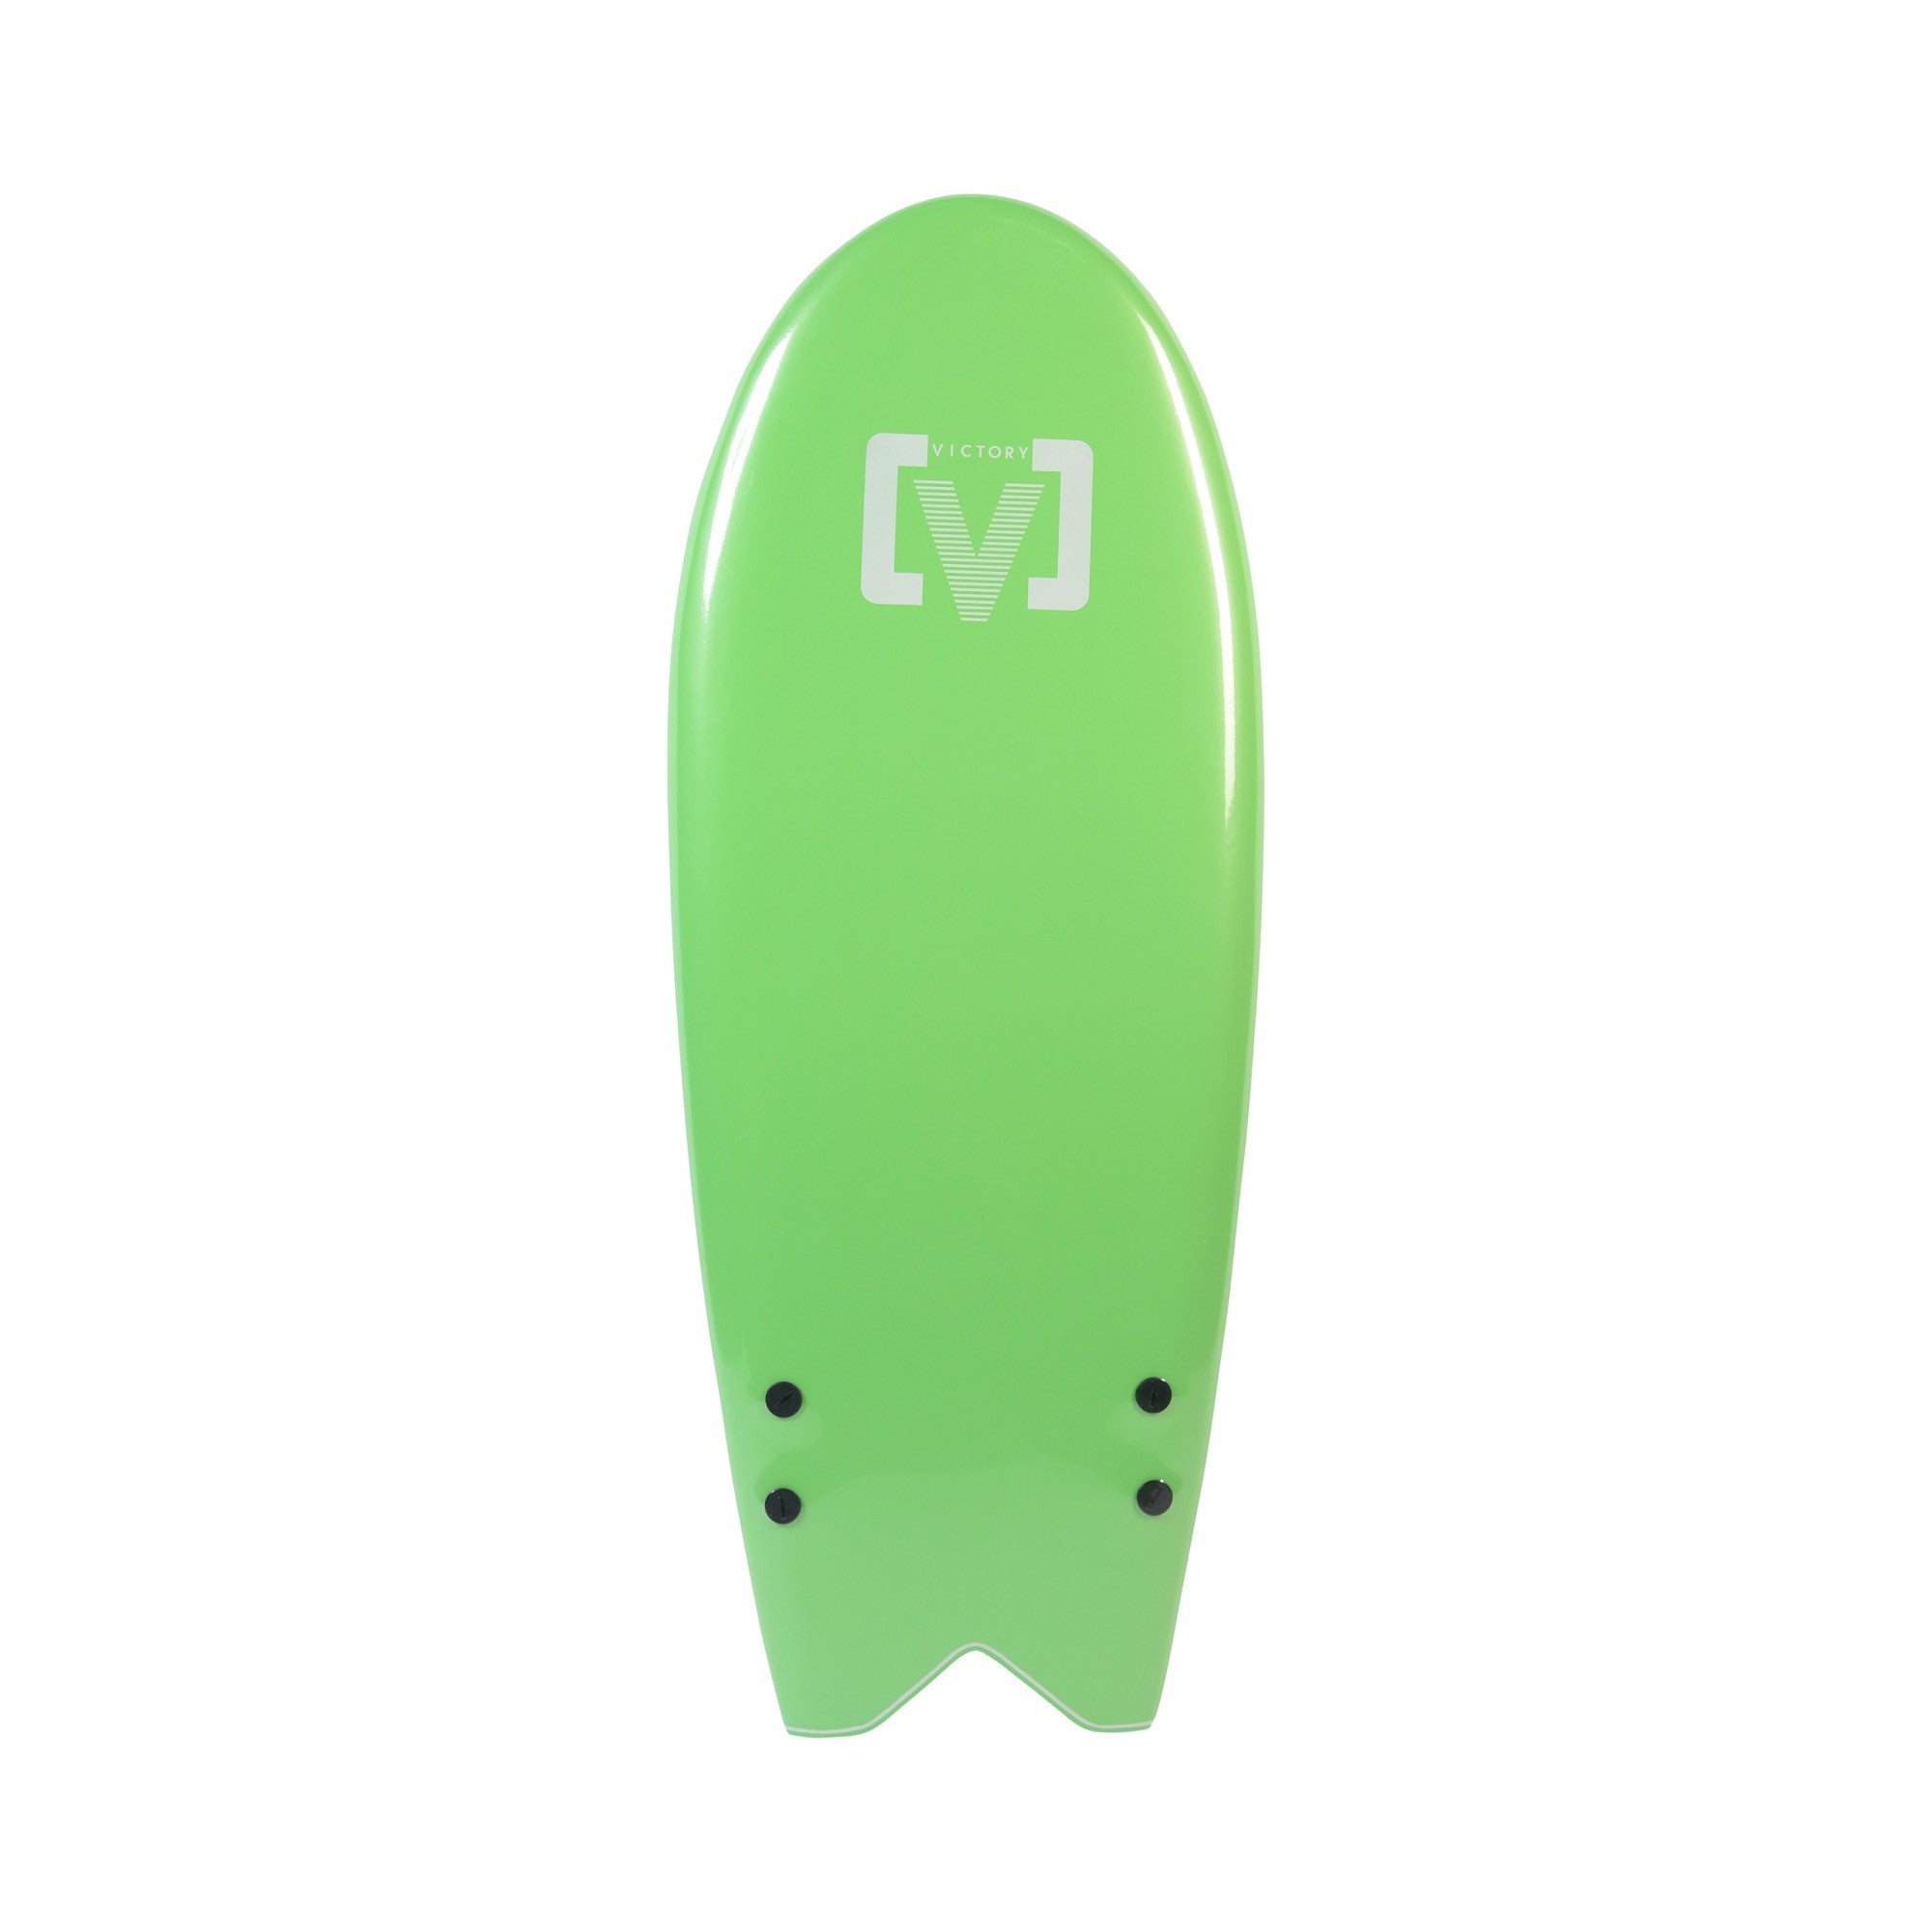 VICTORY - EPS Softboard - Foam Surfboard - Torpedo 4'7 - Green